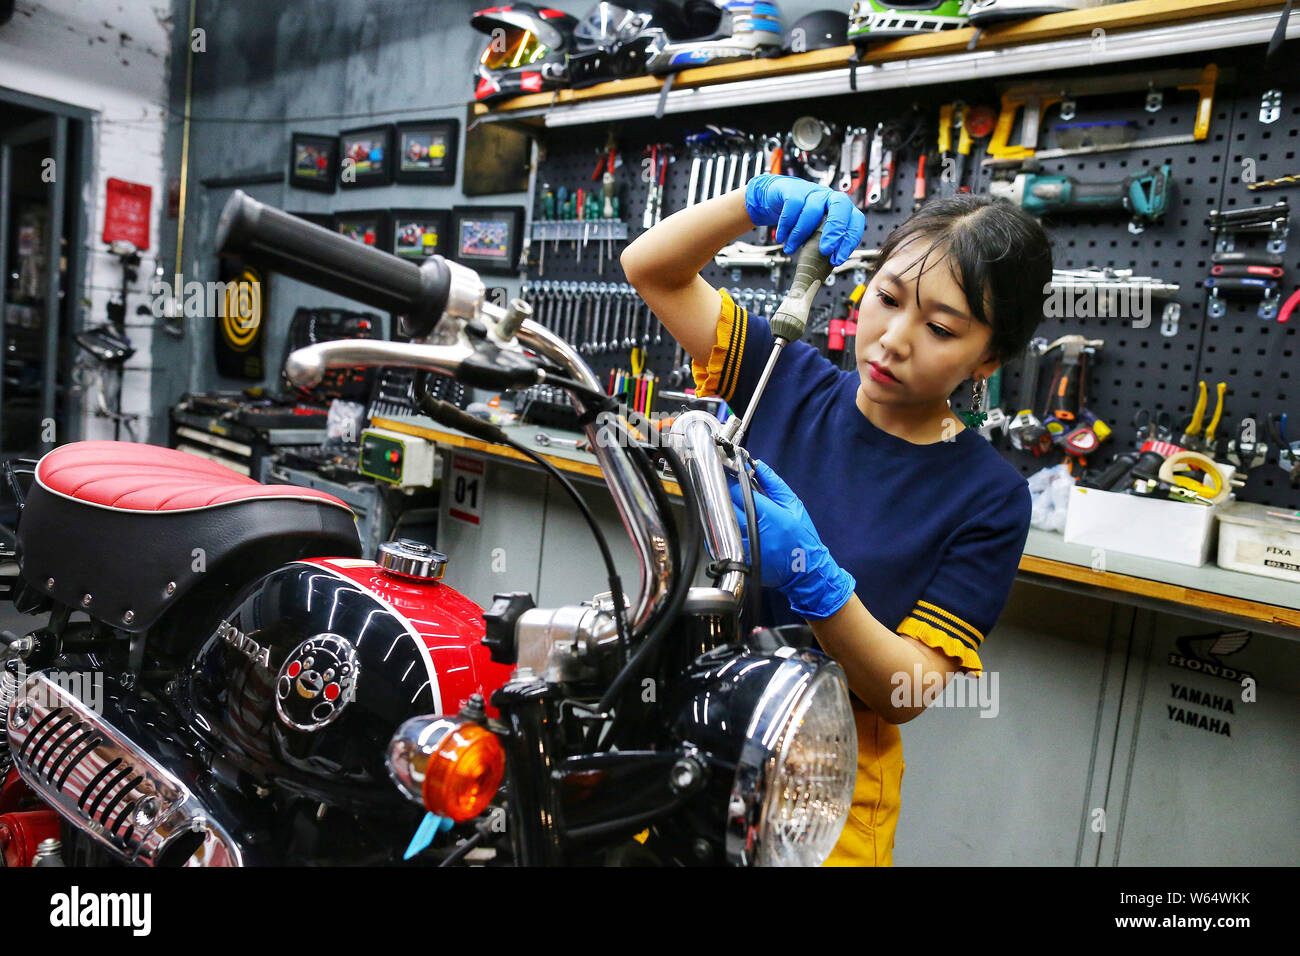 Post-90s chinois Chen fille Xiaomai modifie une moto à son magasin à Beijing, Chine, le 1 août 2018. Chen Xiaomai, un post-90s girl, est obsédé w Banque D'Images